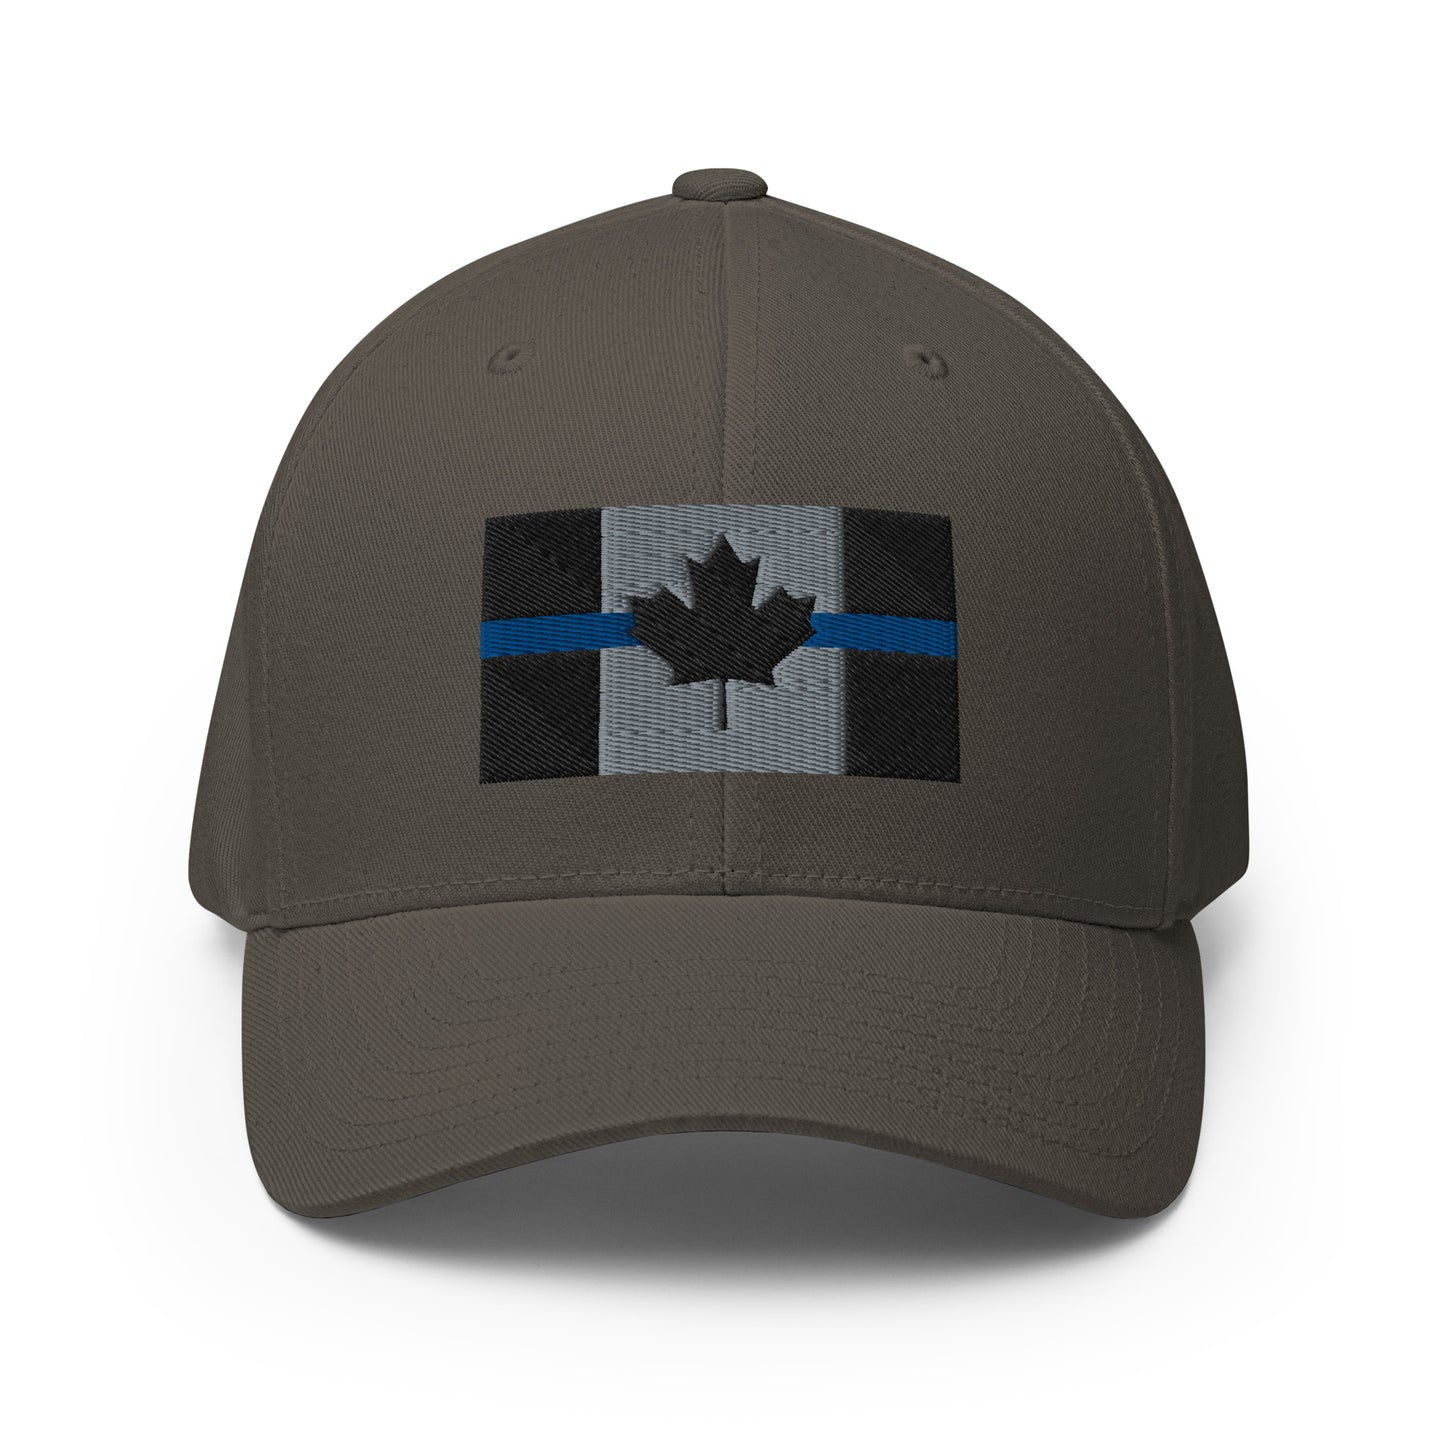 Thin Blue Line Flexfit Hat-911 Duty Gear Canada-911 Duty Gear Canada